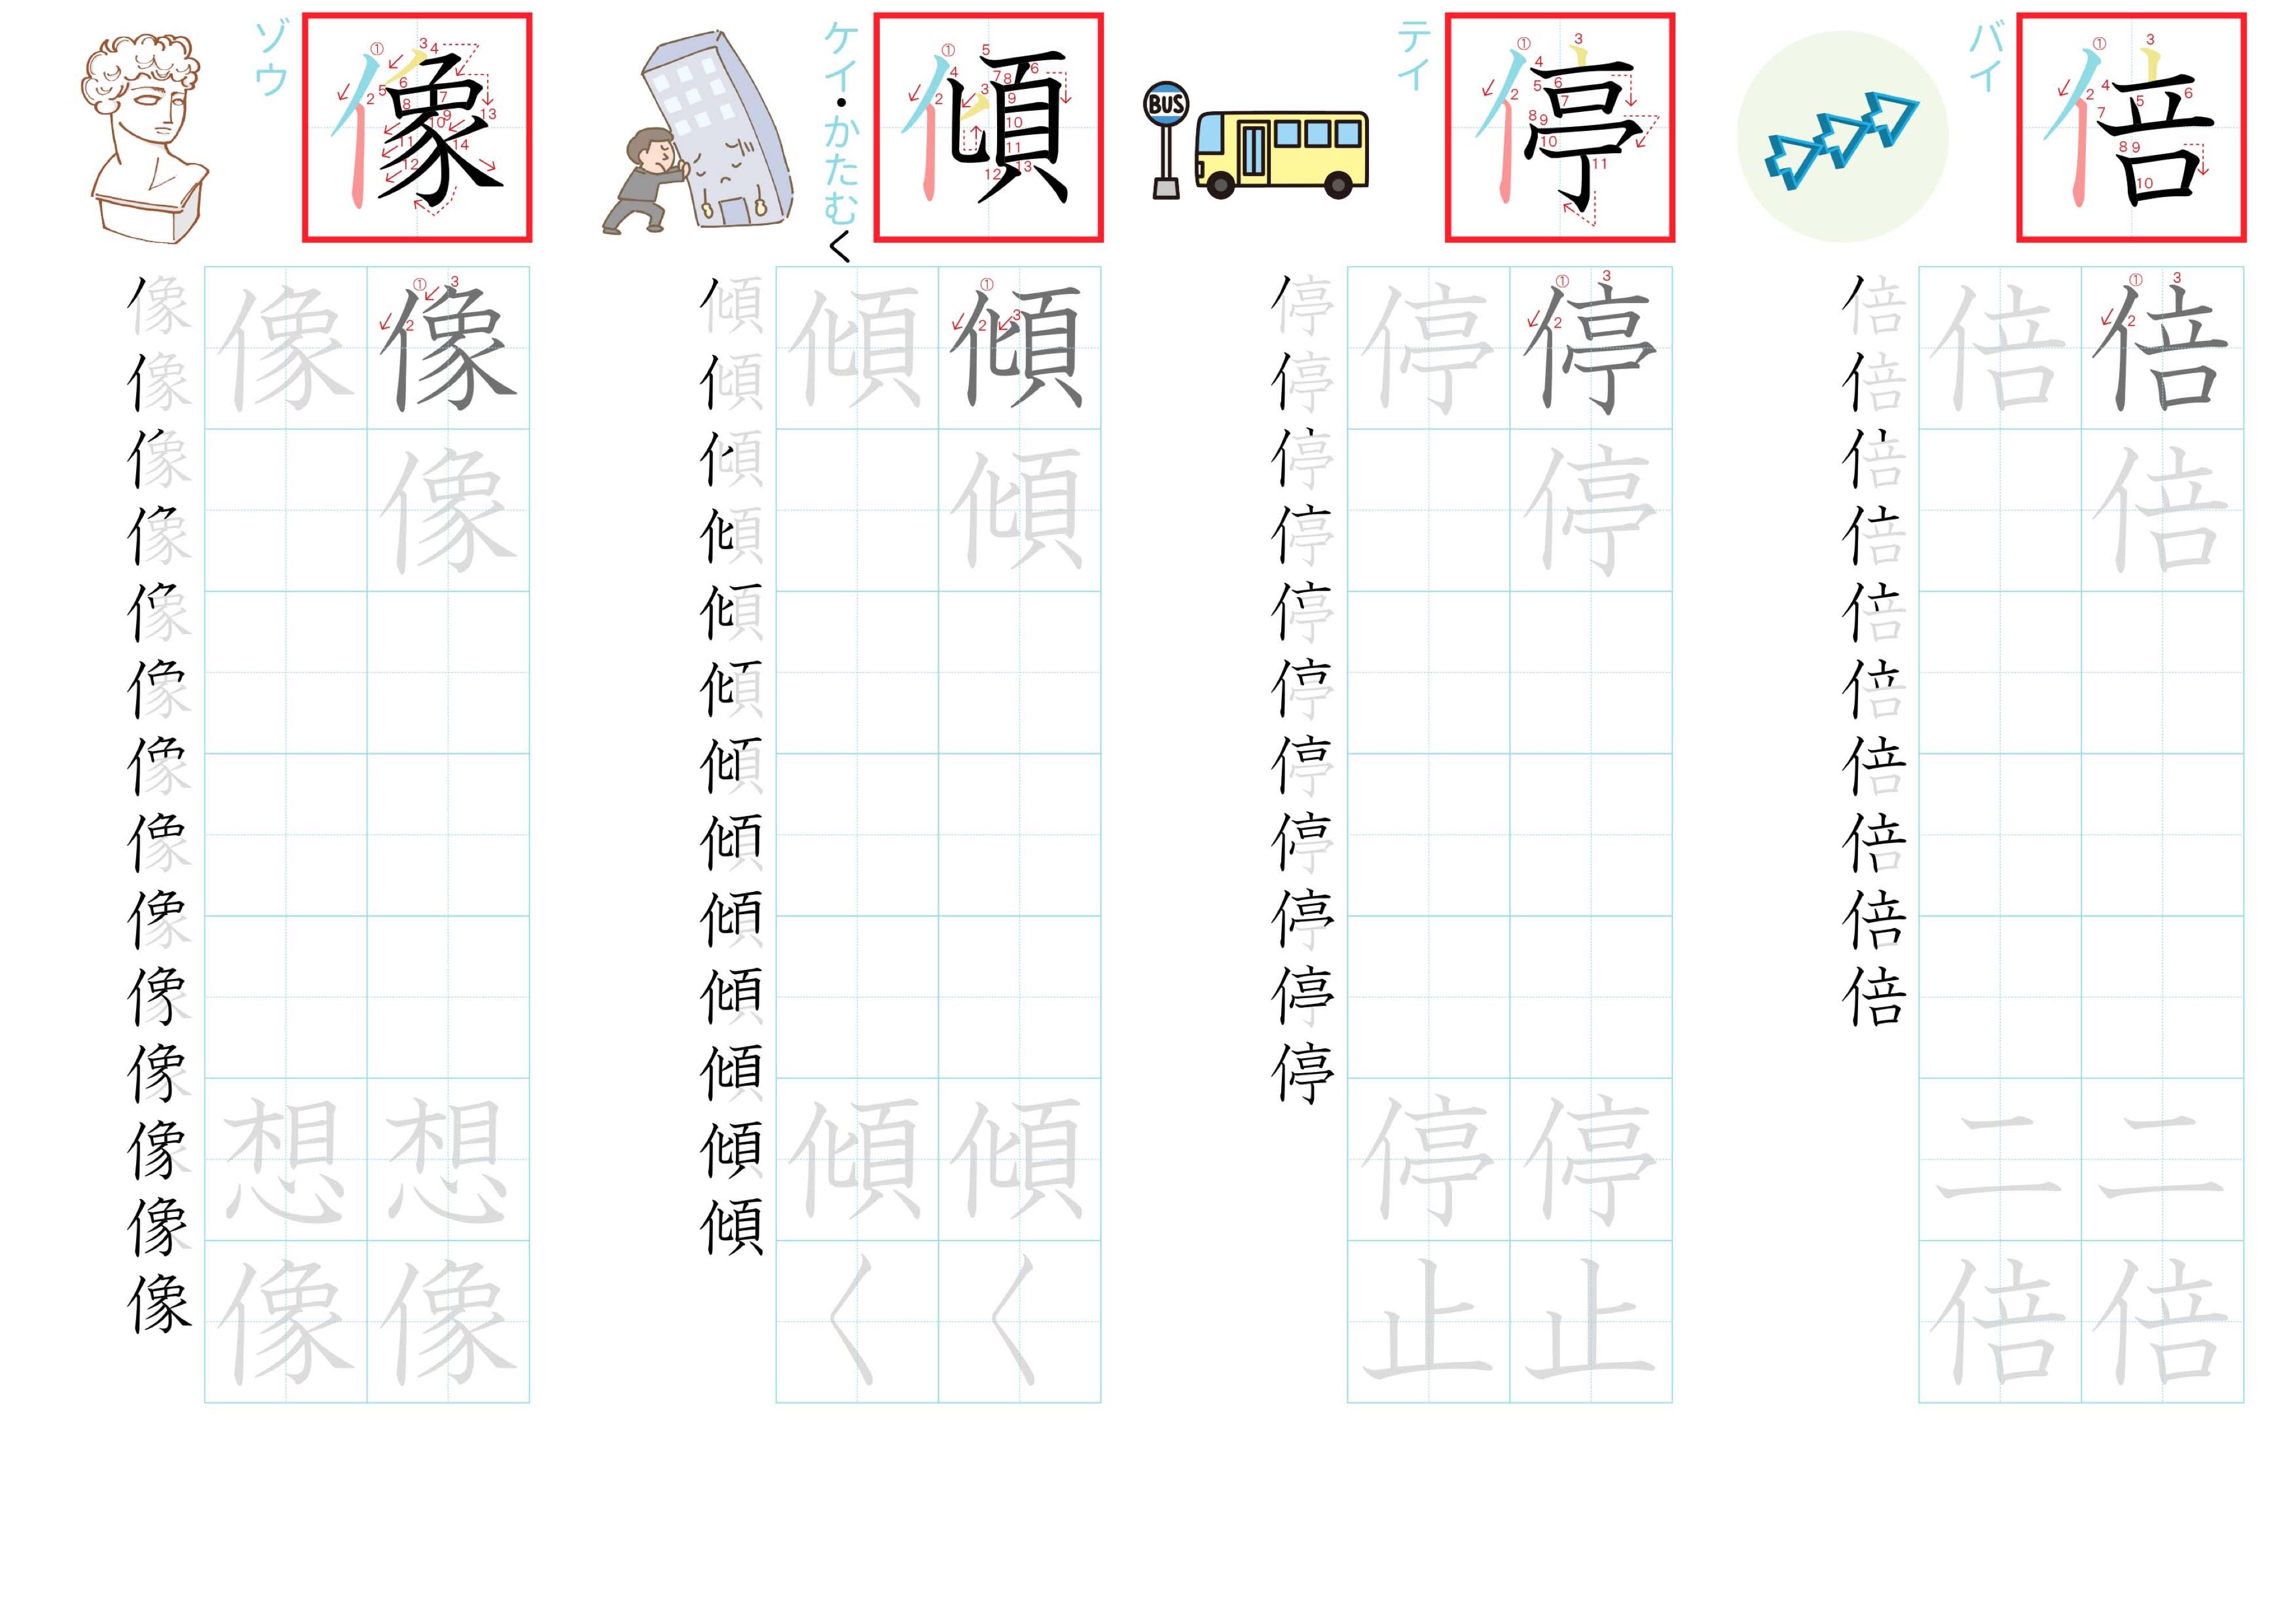 kanji-practice-card-n2-japanese-160